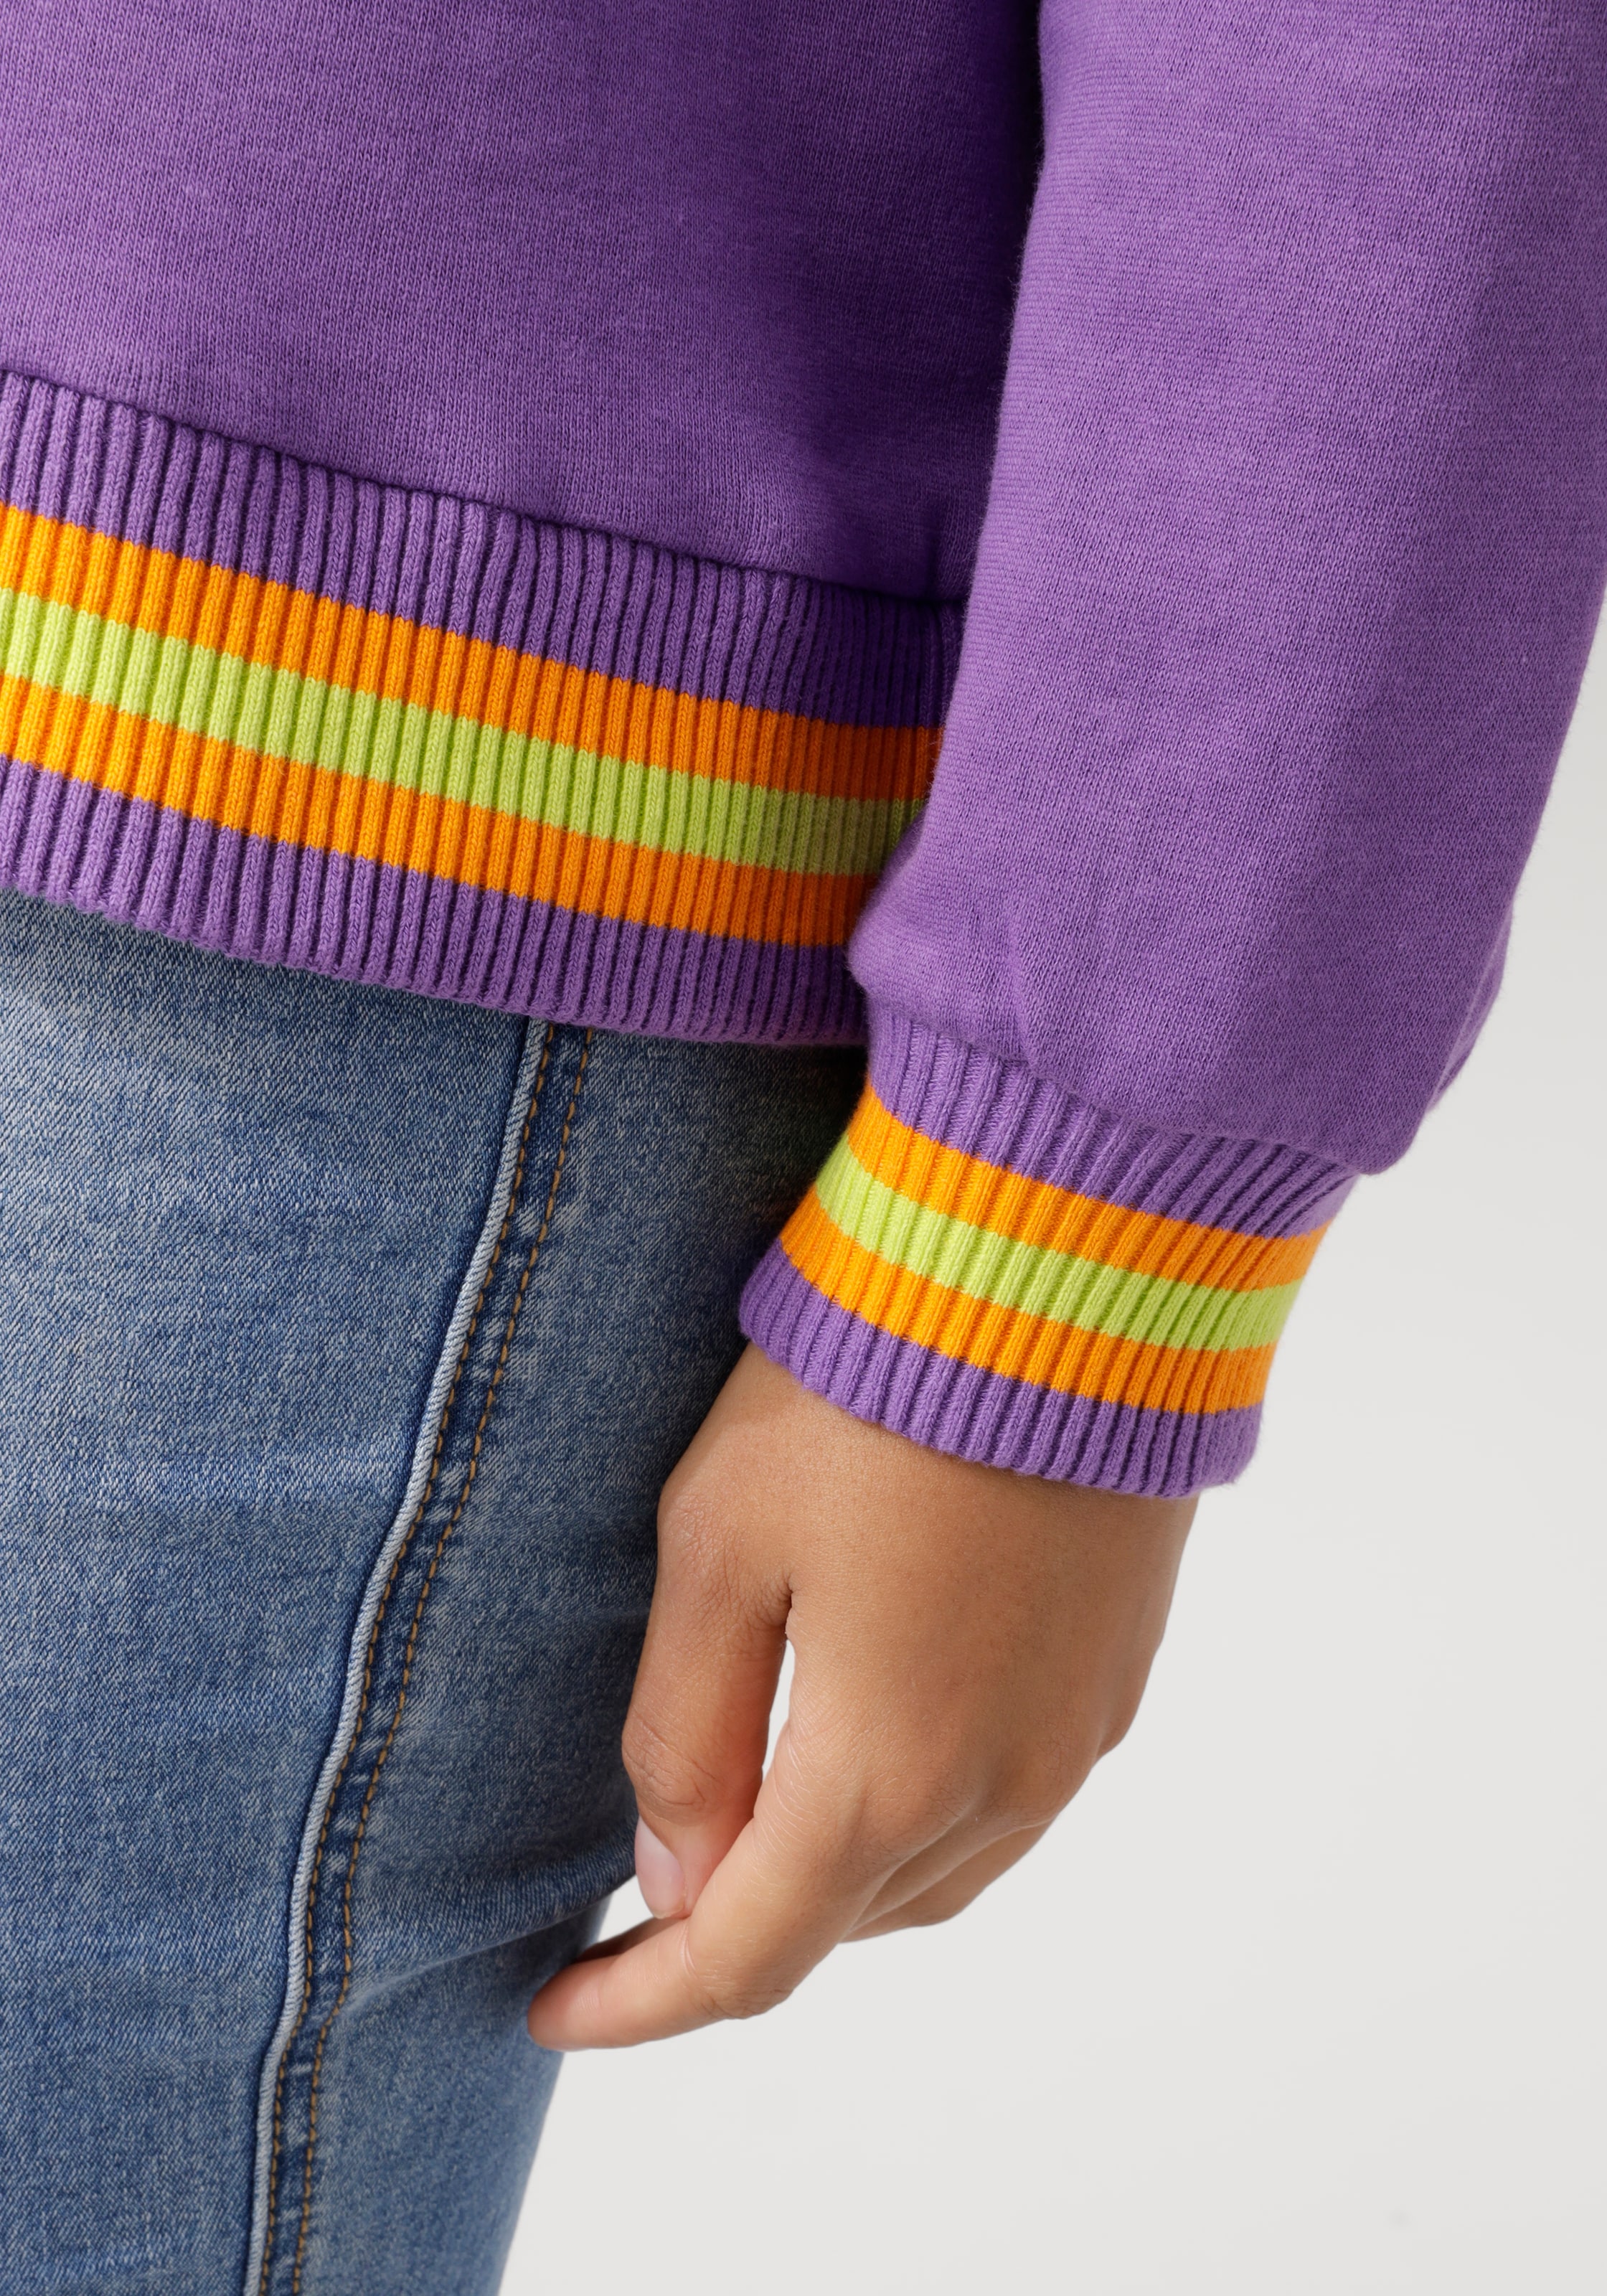 Aniston CASUAL Sweatshirt, Frontdruck mit abstrakter Seerose und Schriftzug